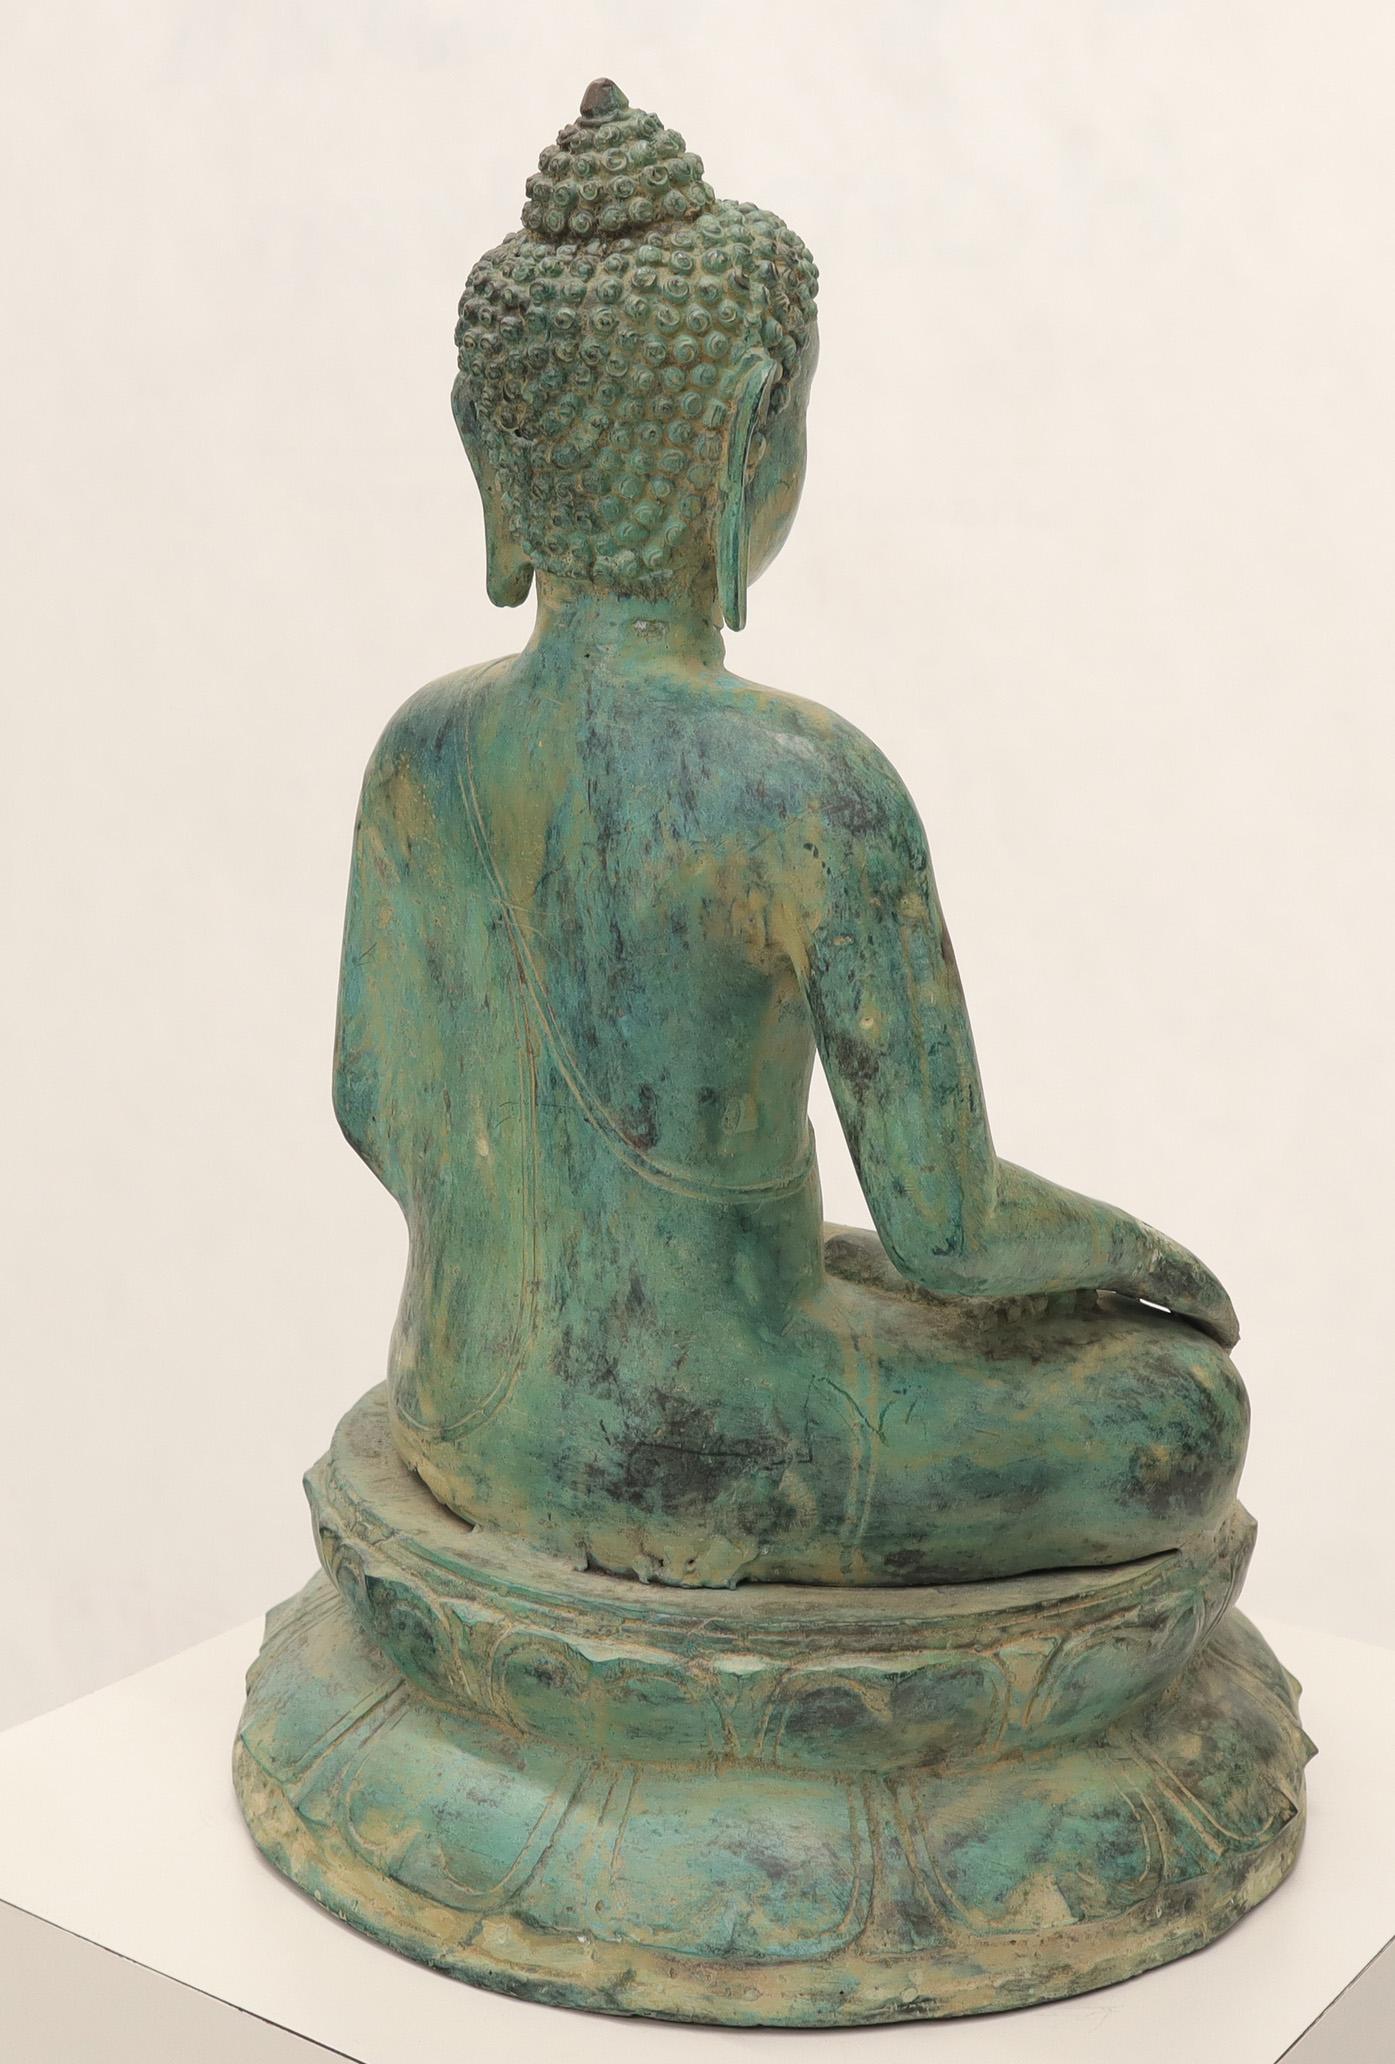 Patinated Bronze Buddha Sculpture Green Patina